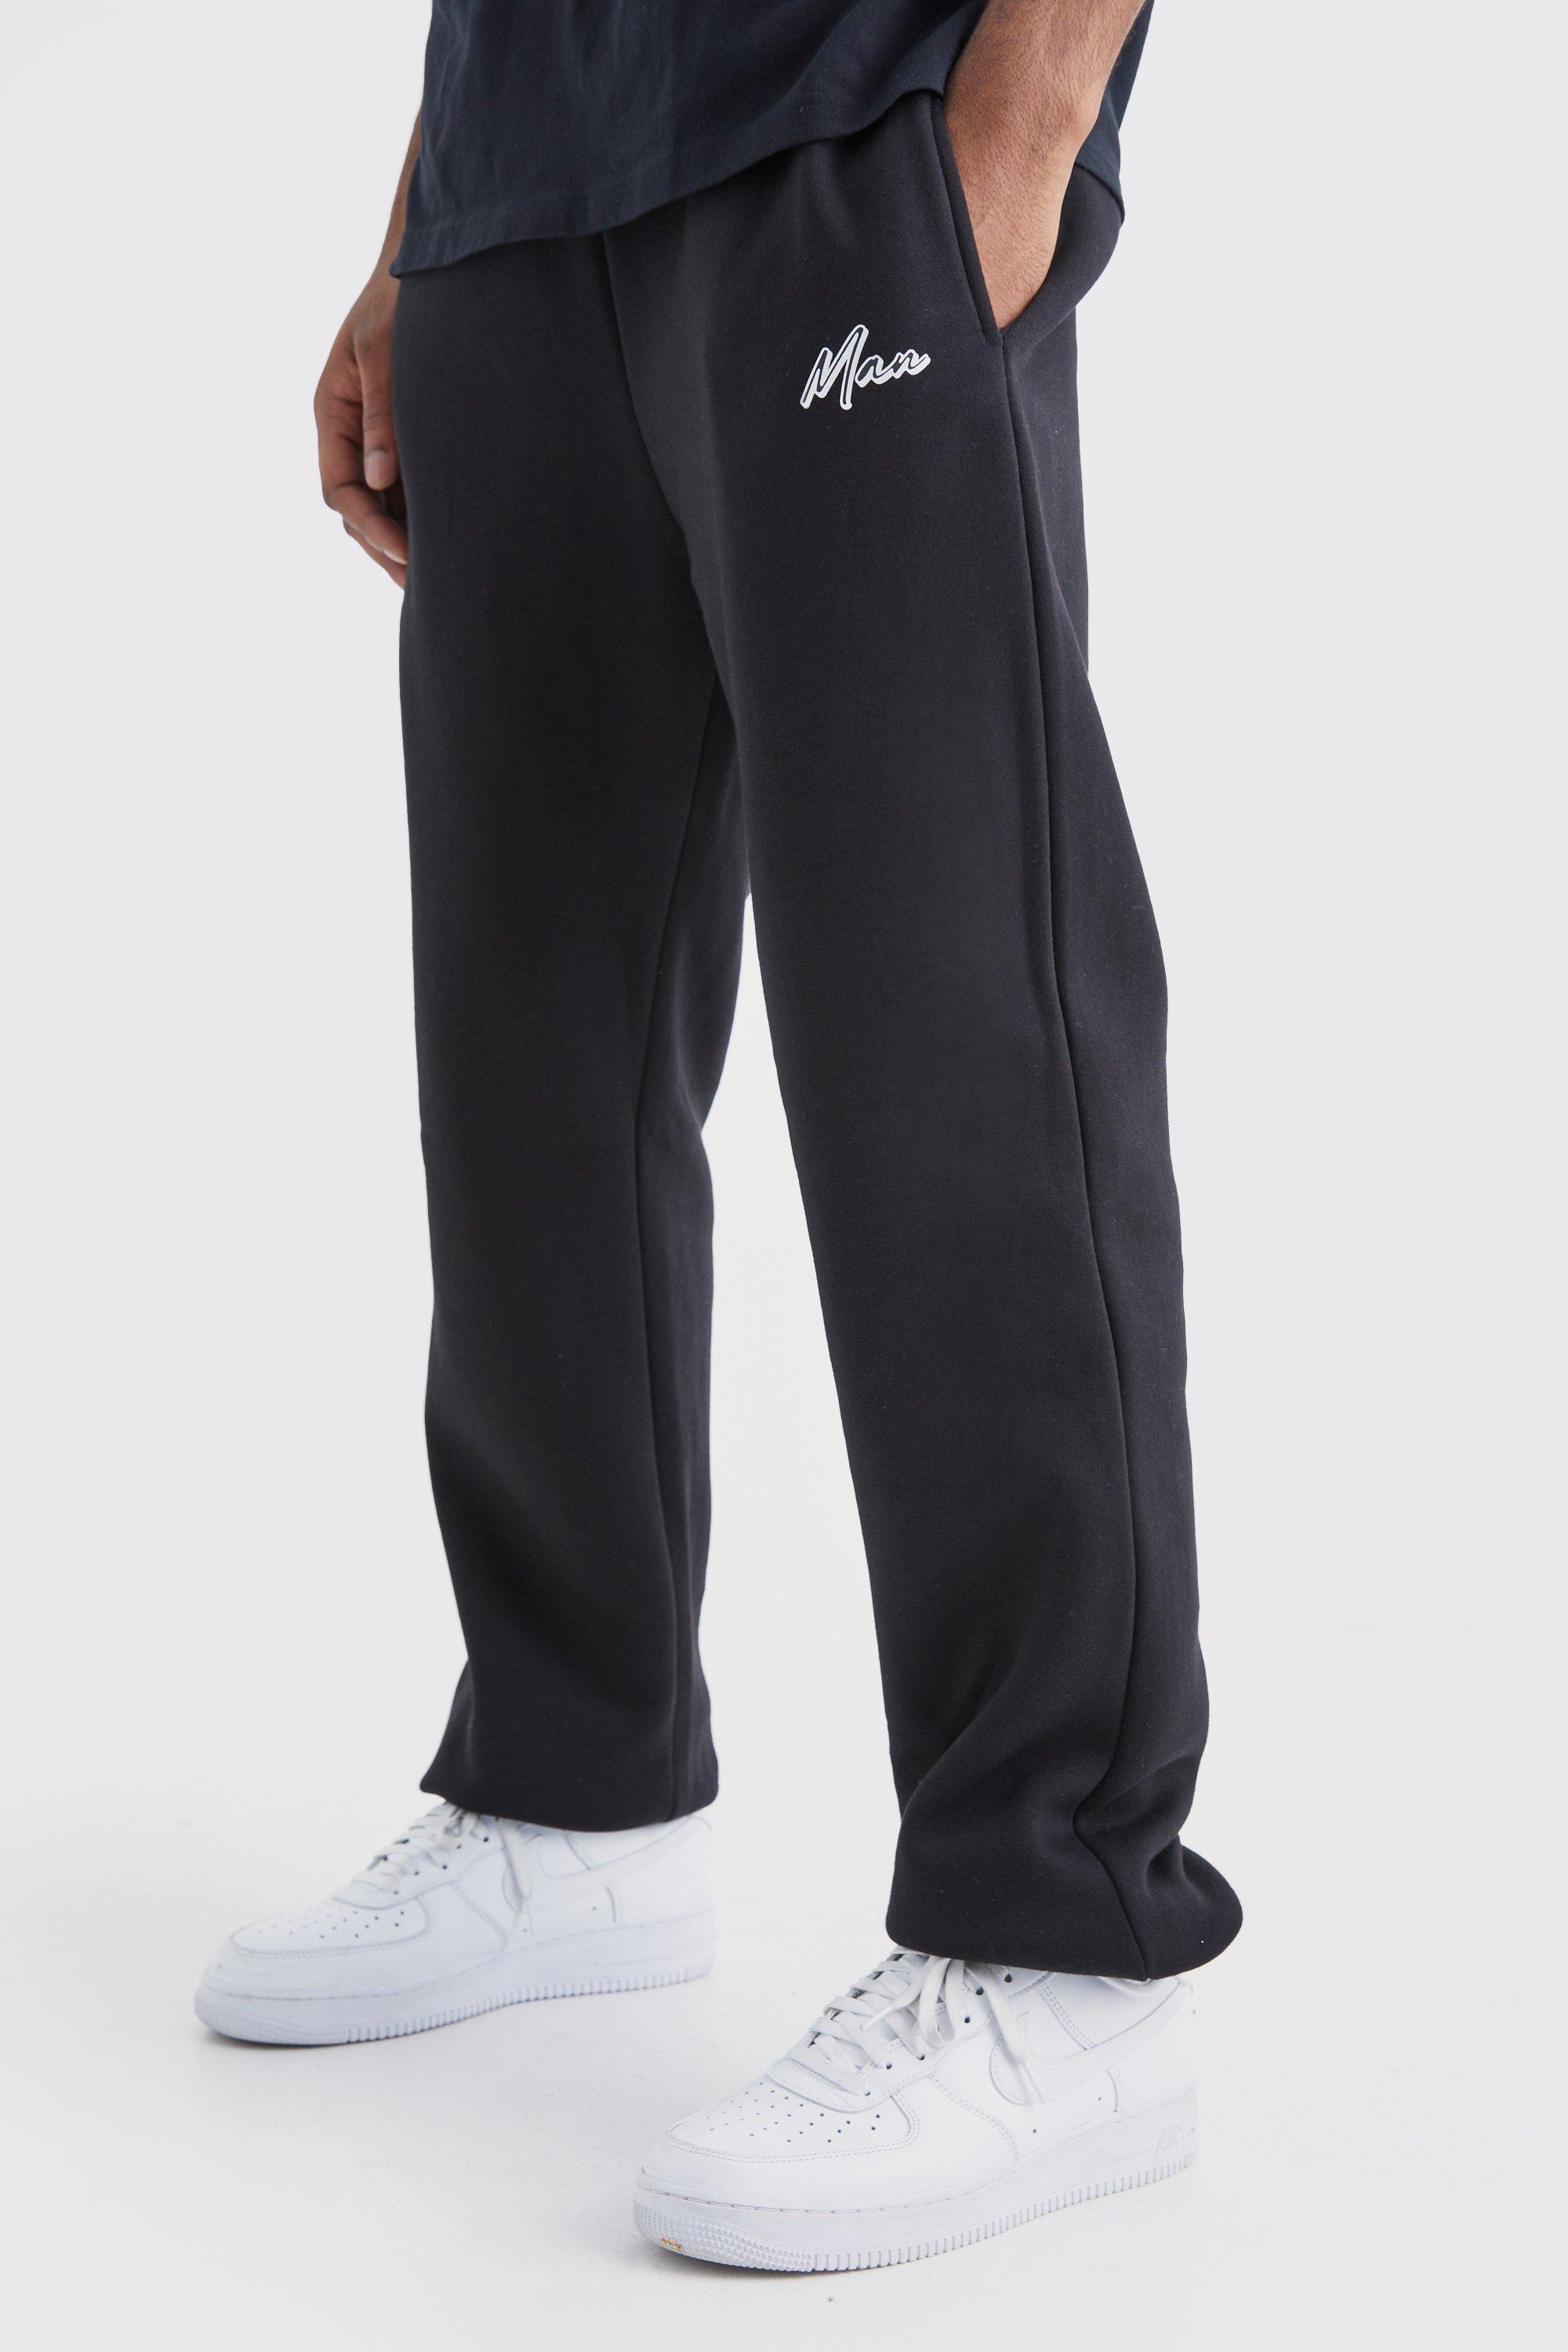 Image of Pantaloni tuta Tall Core Fit con firma Man e logo, Nero